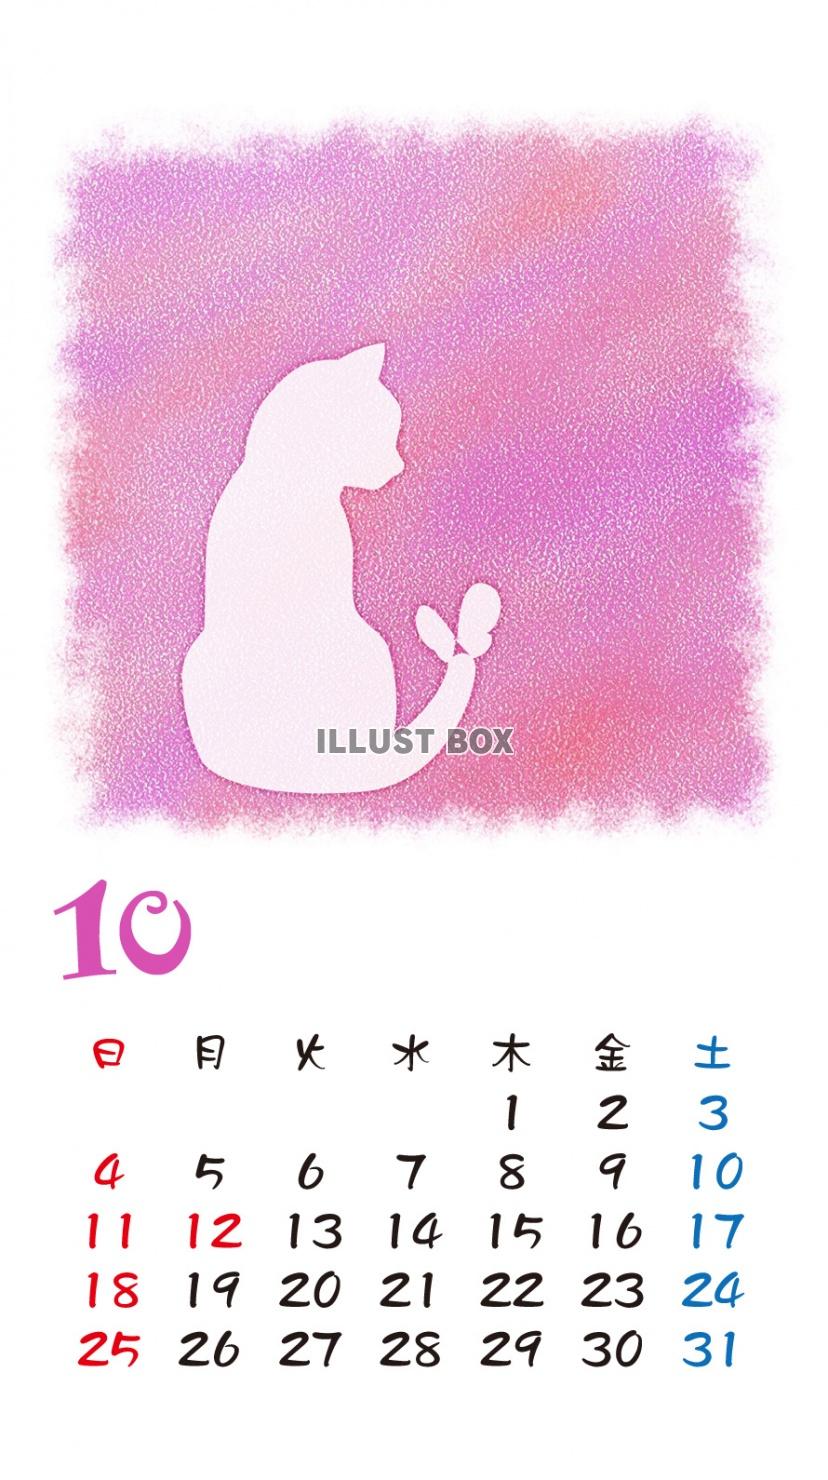 無料イラスト Iphone6用 カレンダー 猫シルエットパステル調 10